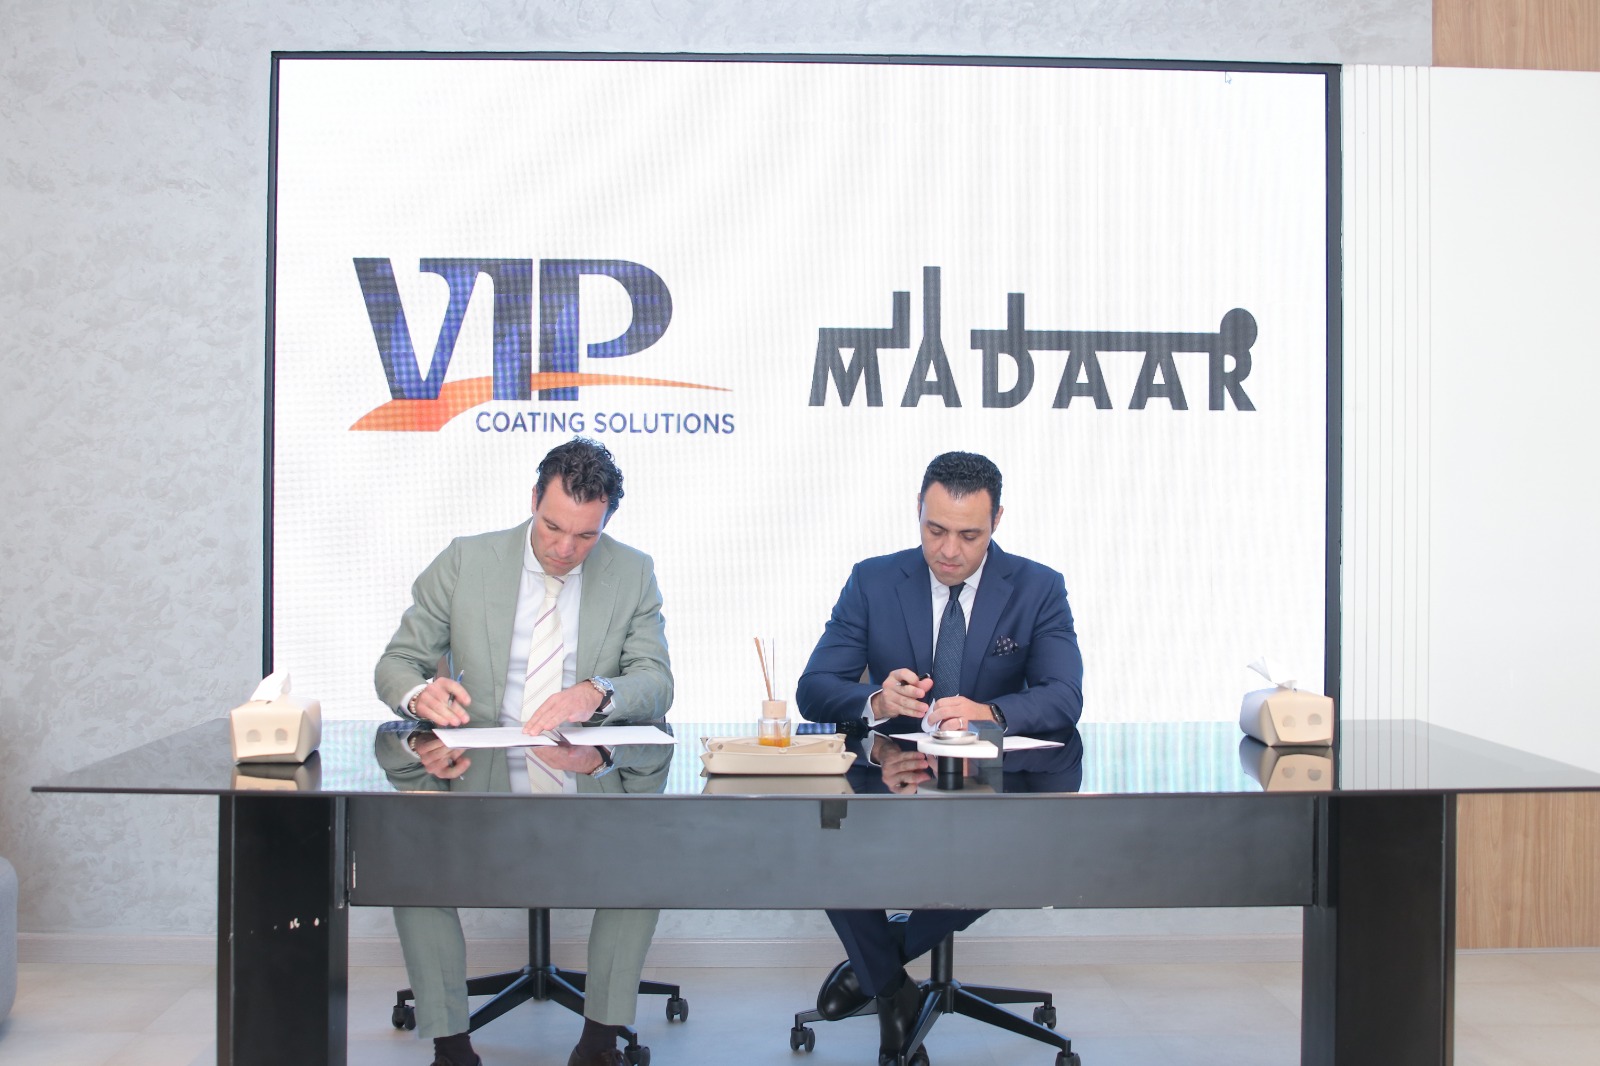 اتفاقية شراكة لعشر سنوات بين ميدار للتطوير و VIP Coating Solutions